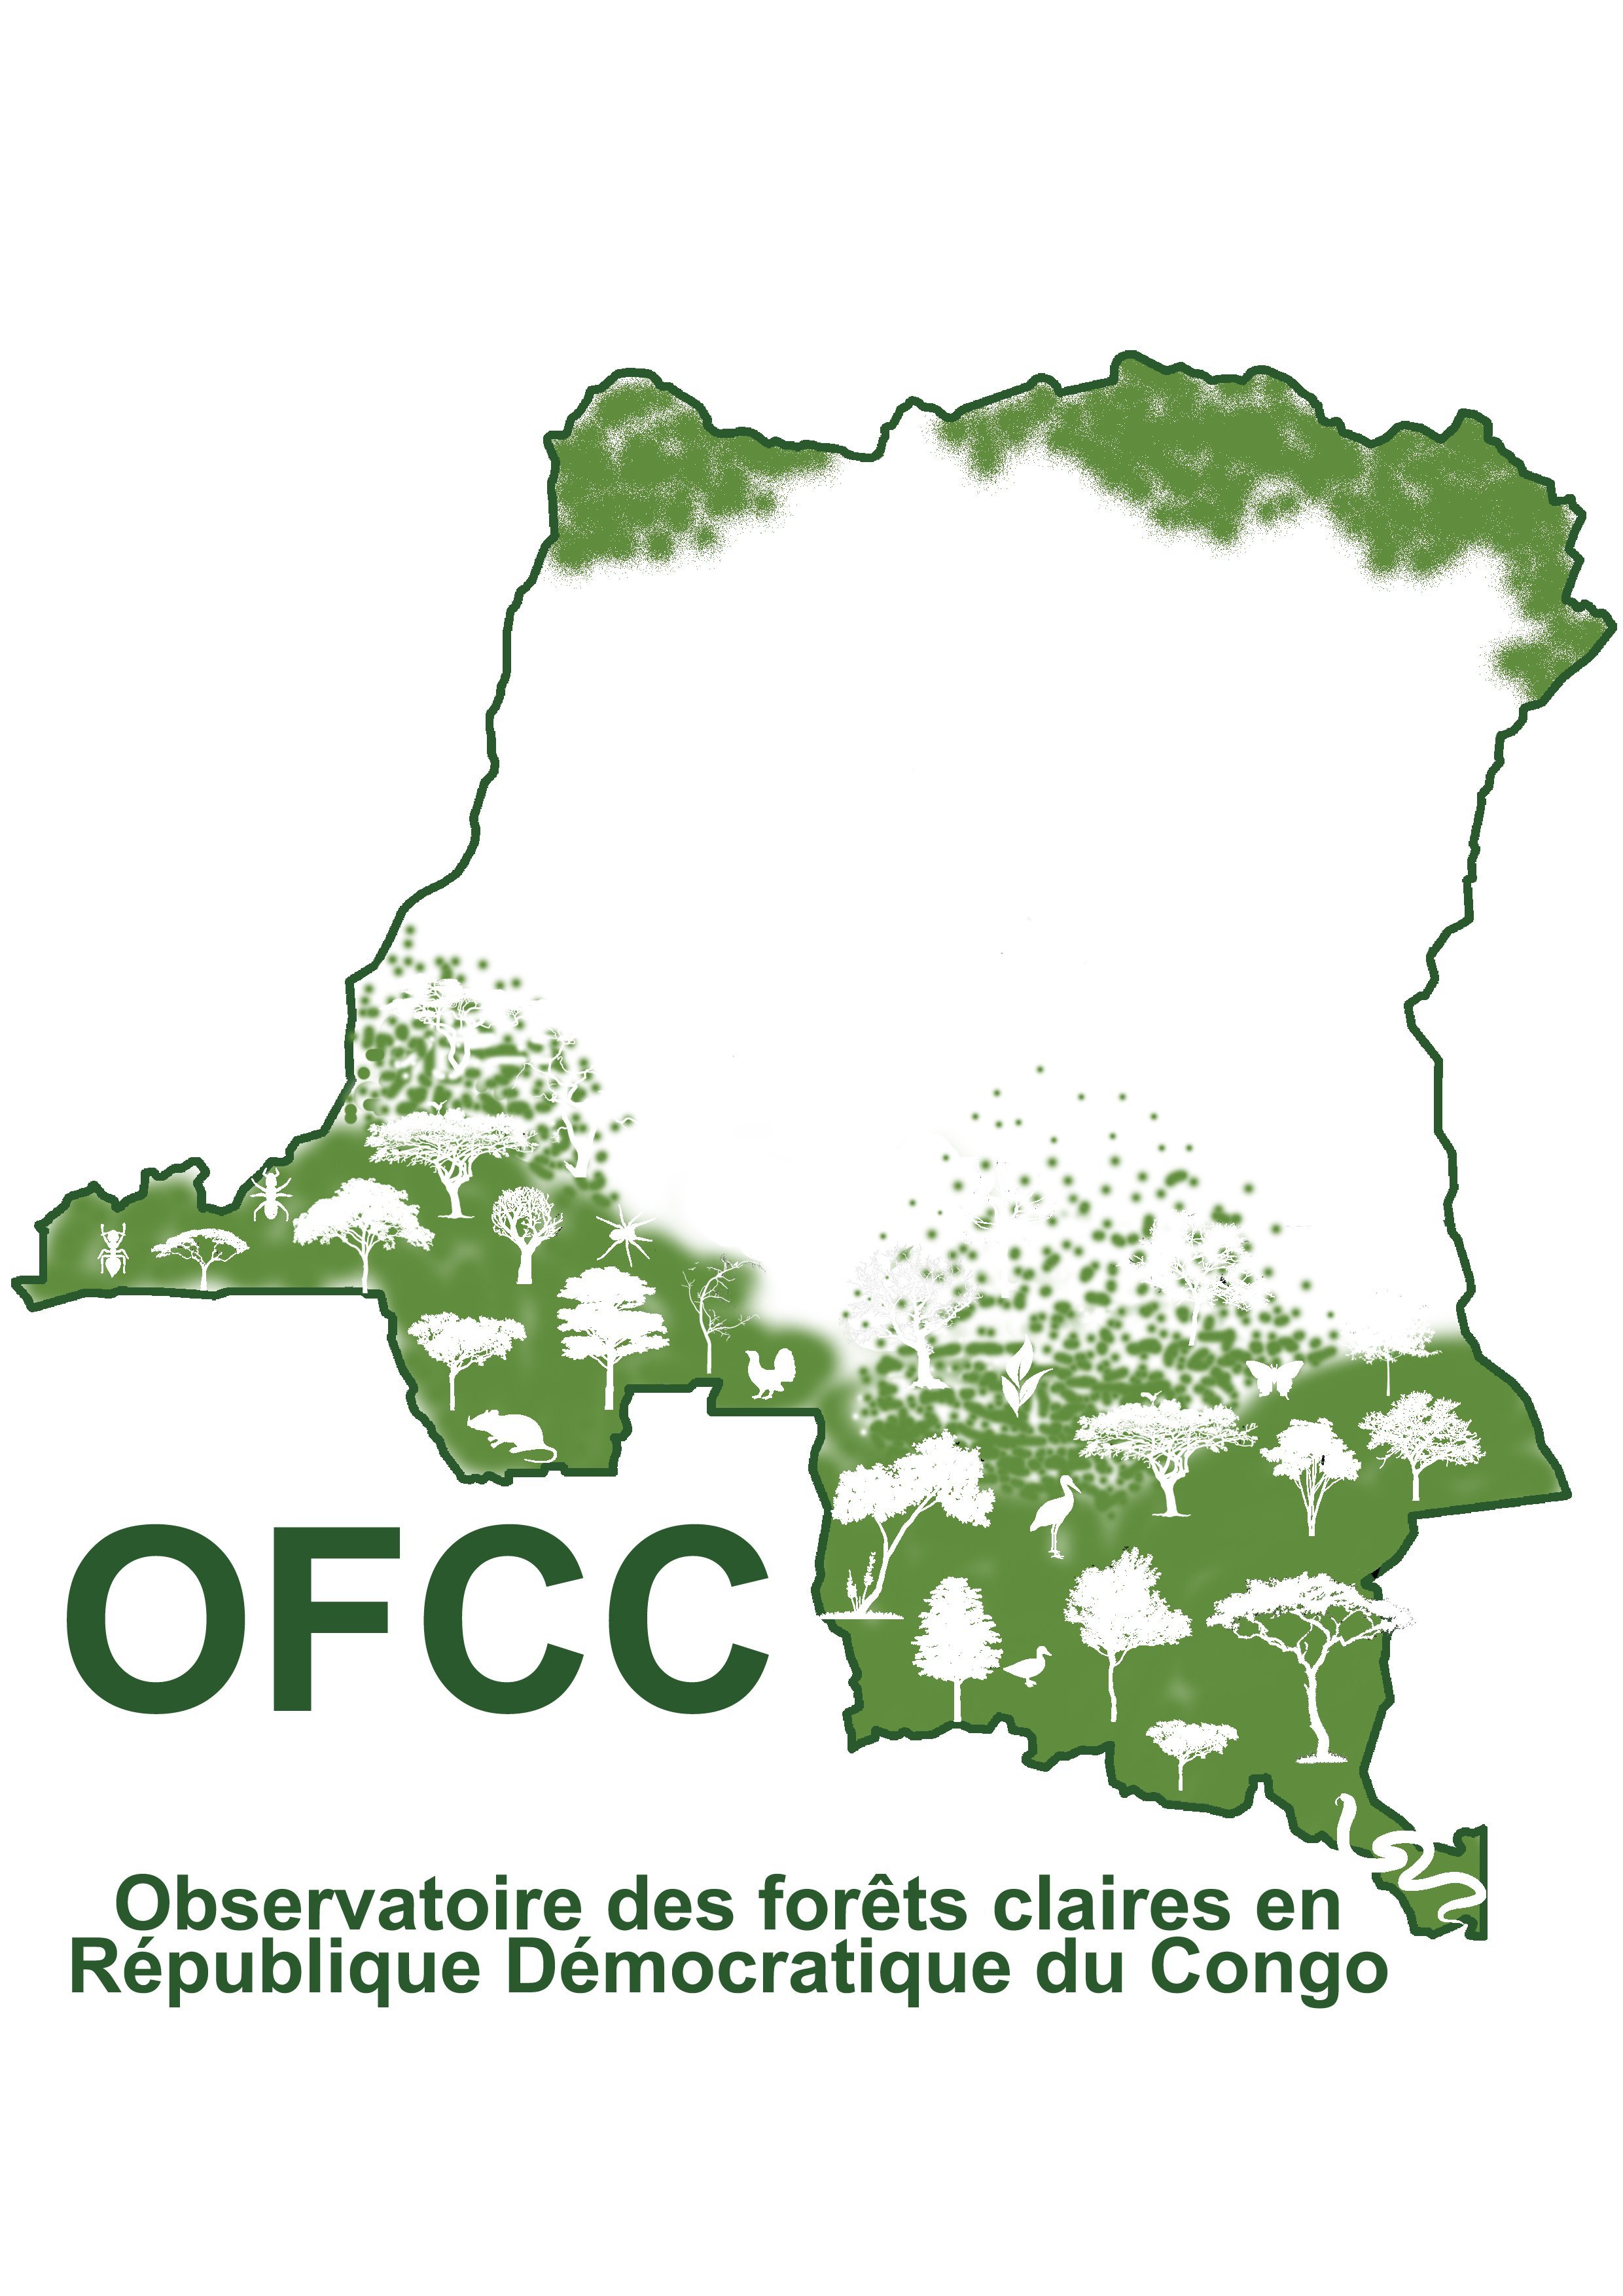 La forêt claire du Miombo dont traite l'Observatoire des Forêts Claires en RD Congo (OFCC) est une ressource vitale pour une grande partie de la population